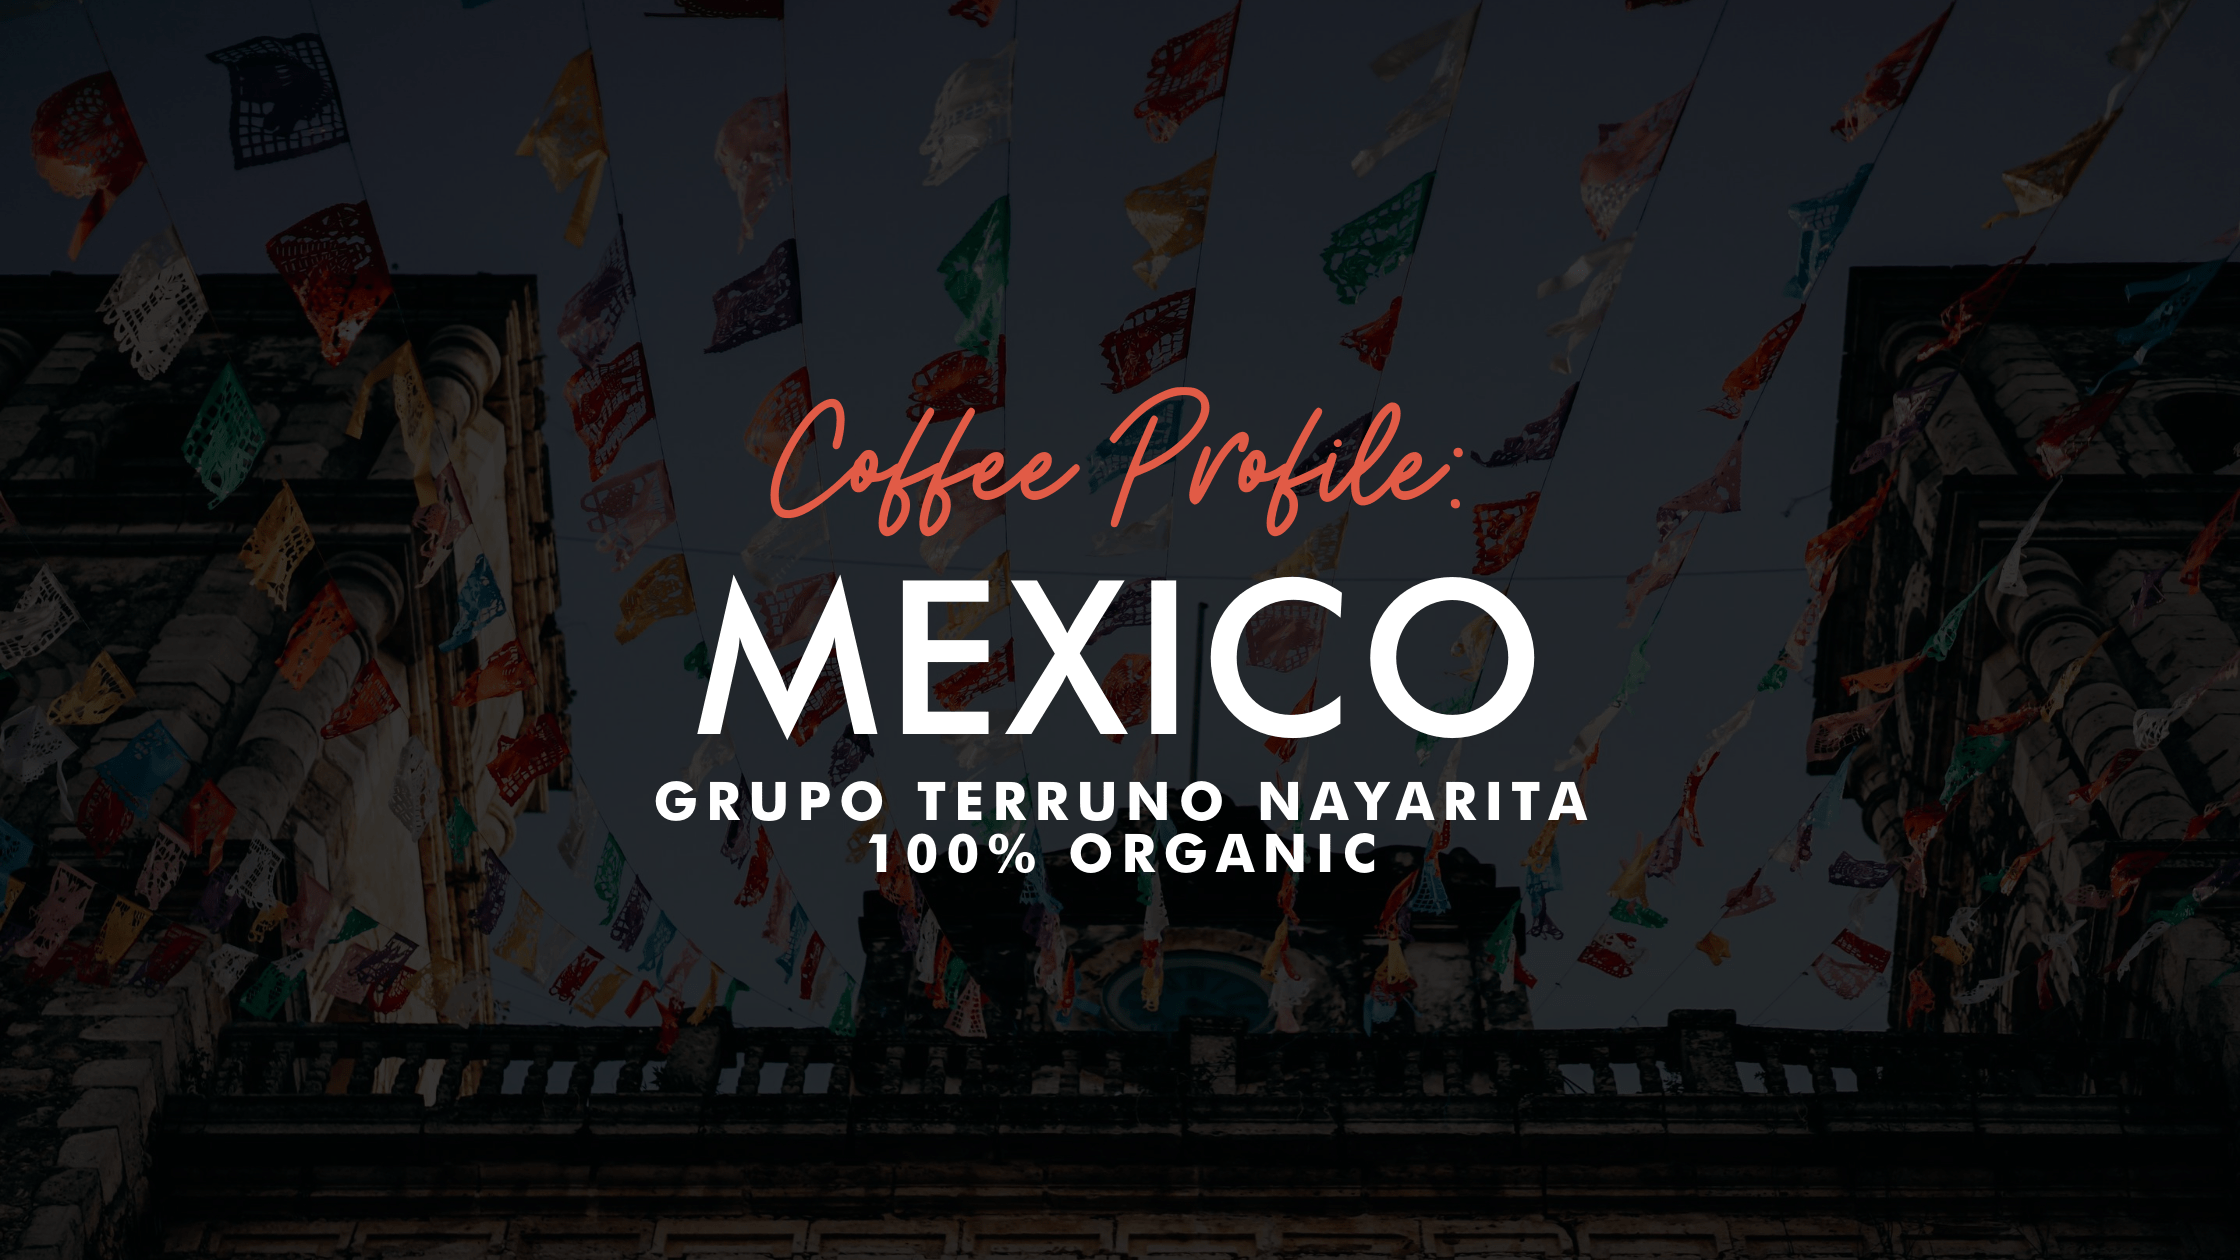 Coffee Profile: Mexican Grupo Terruno Nayarita 100% Organic